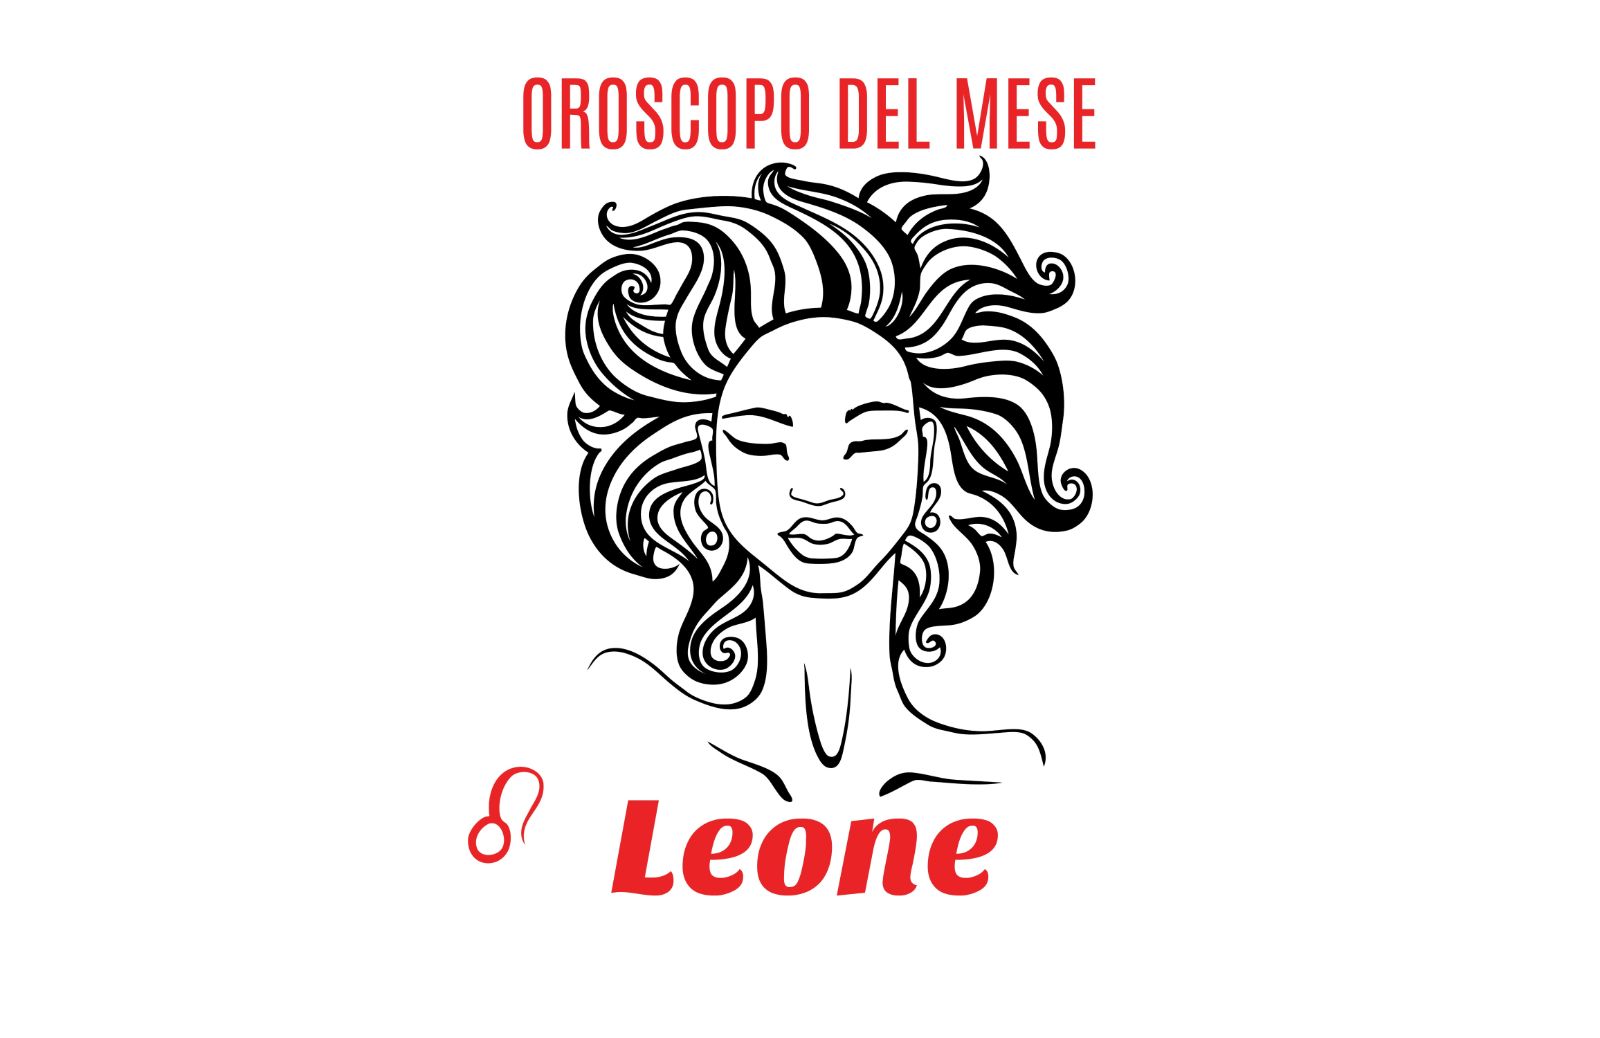 Oroscopo del mese: Leone - giugno 2019